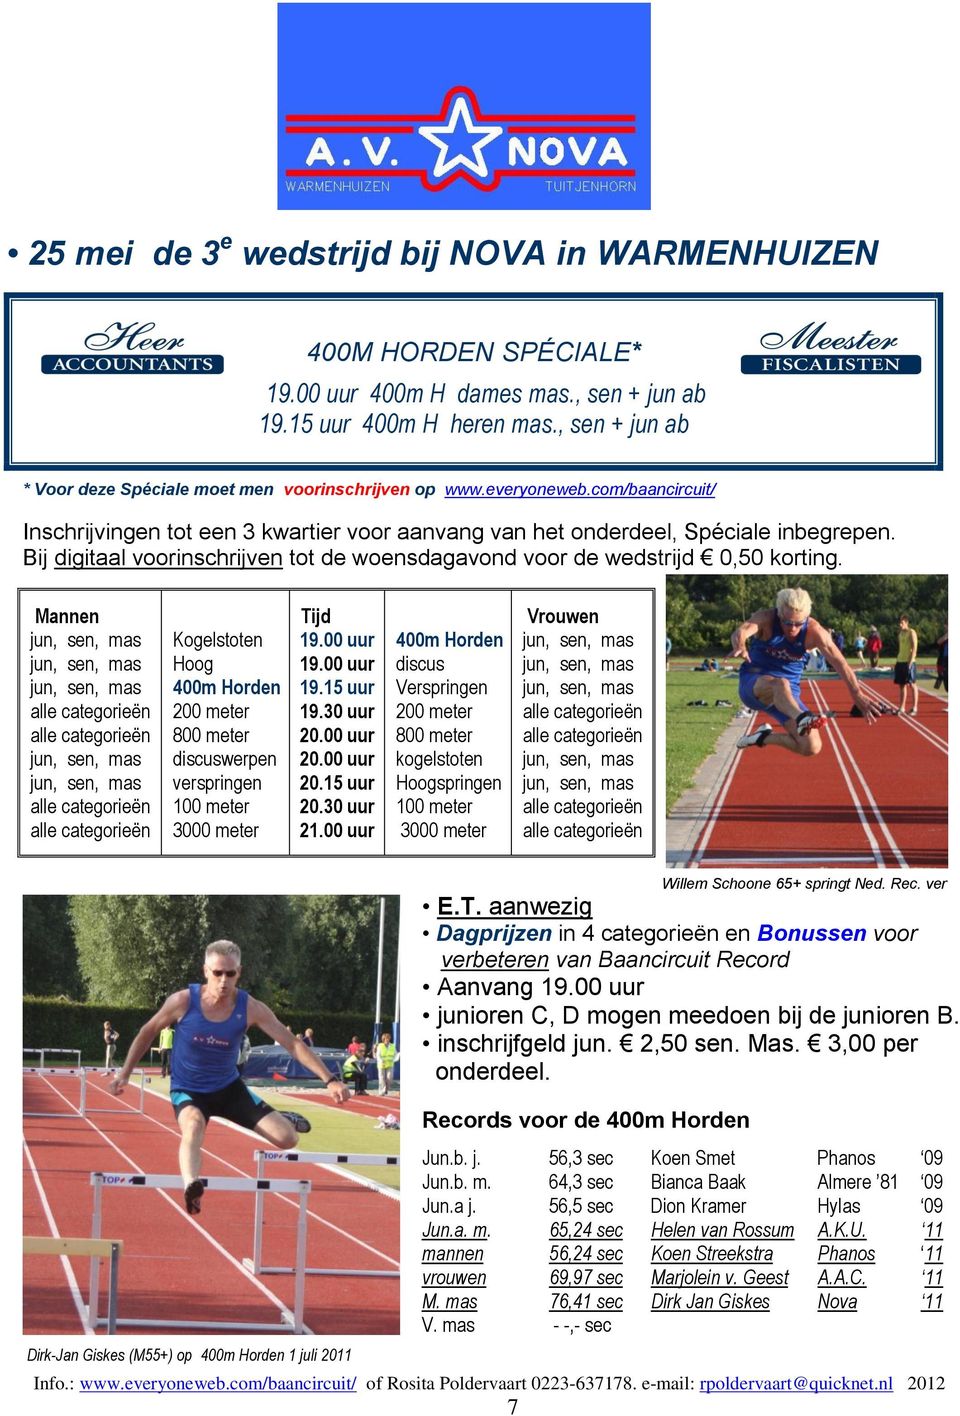 Mannen Kogelstoten Hoog 400m Horden 800 meter discuswerpen Tijd 19.15 uur 20.15 uur 20.30 uur 21.